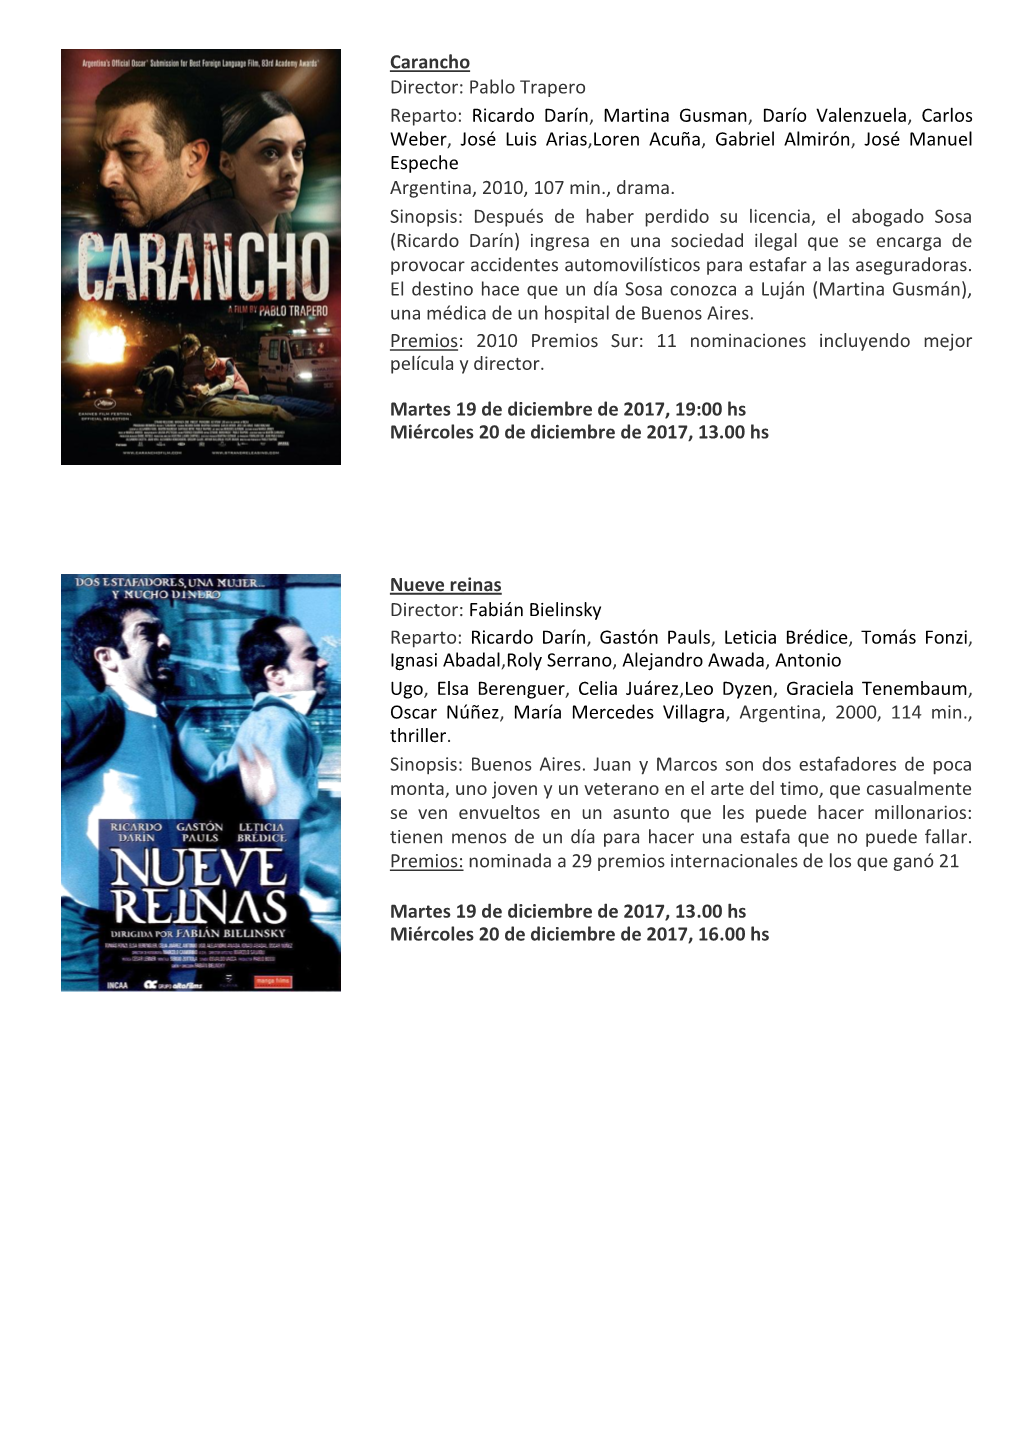 Carancho Director: Pablo Trapero Reparto: Ricardo Darín , Martina